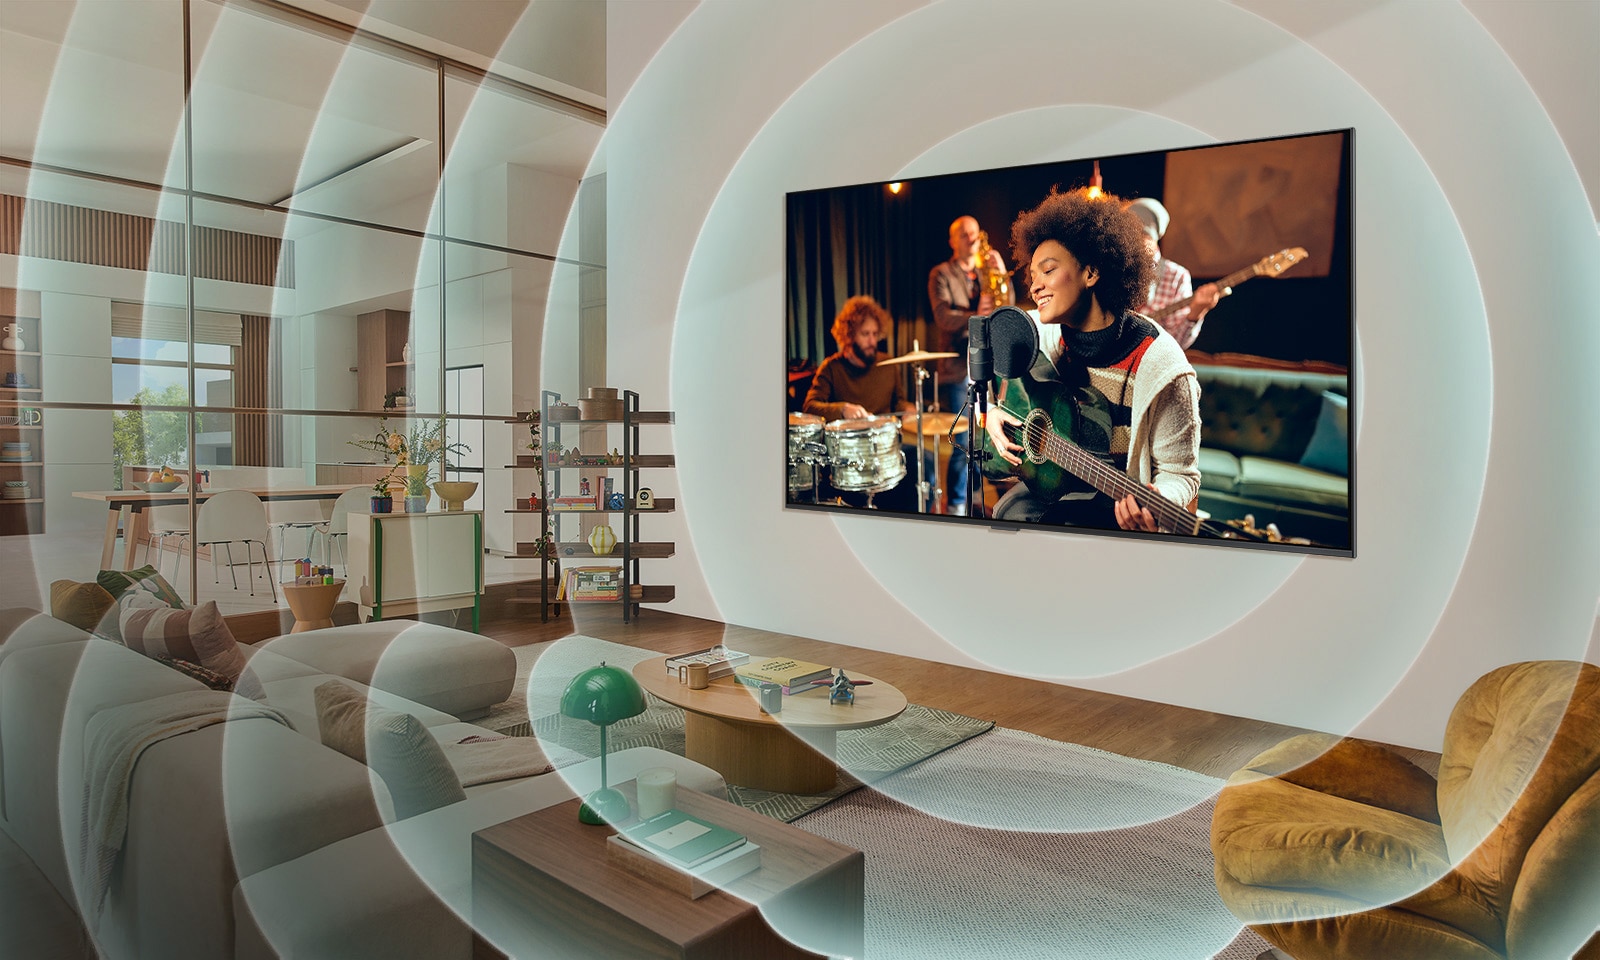 客廳的牆上安裝了 LG TV，螢幕上顯示一名吉他手。代表音波的同心圓圖形。